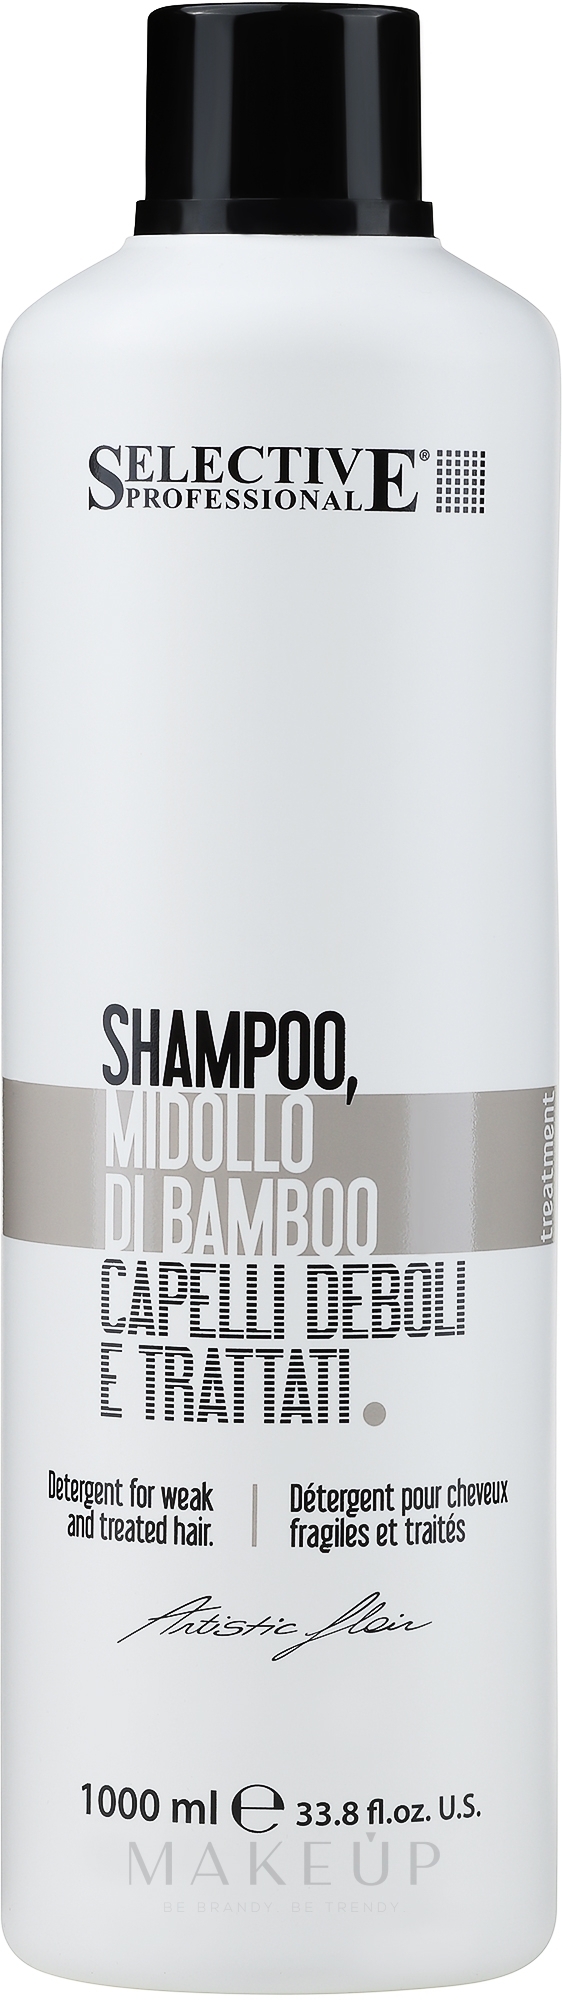 Nährendes Shampoo für trockenes und geschädigtes Haar - Selective Professional Midollo Shampoo — Bild 1000 ml